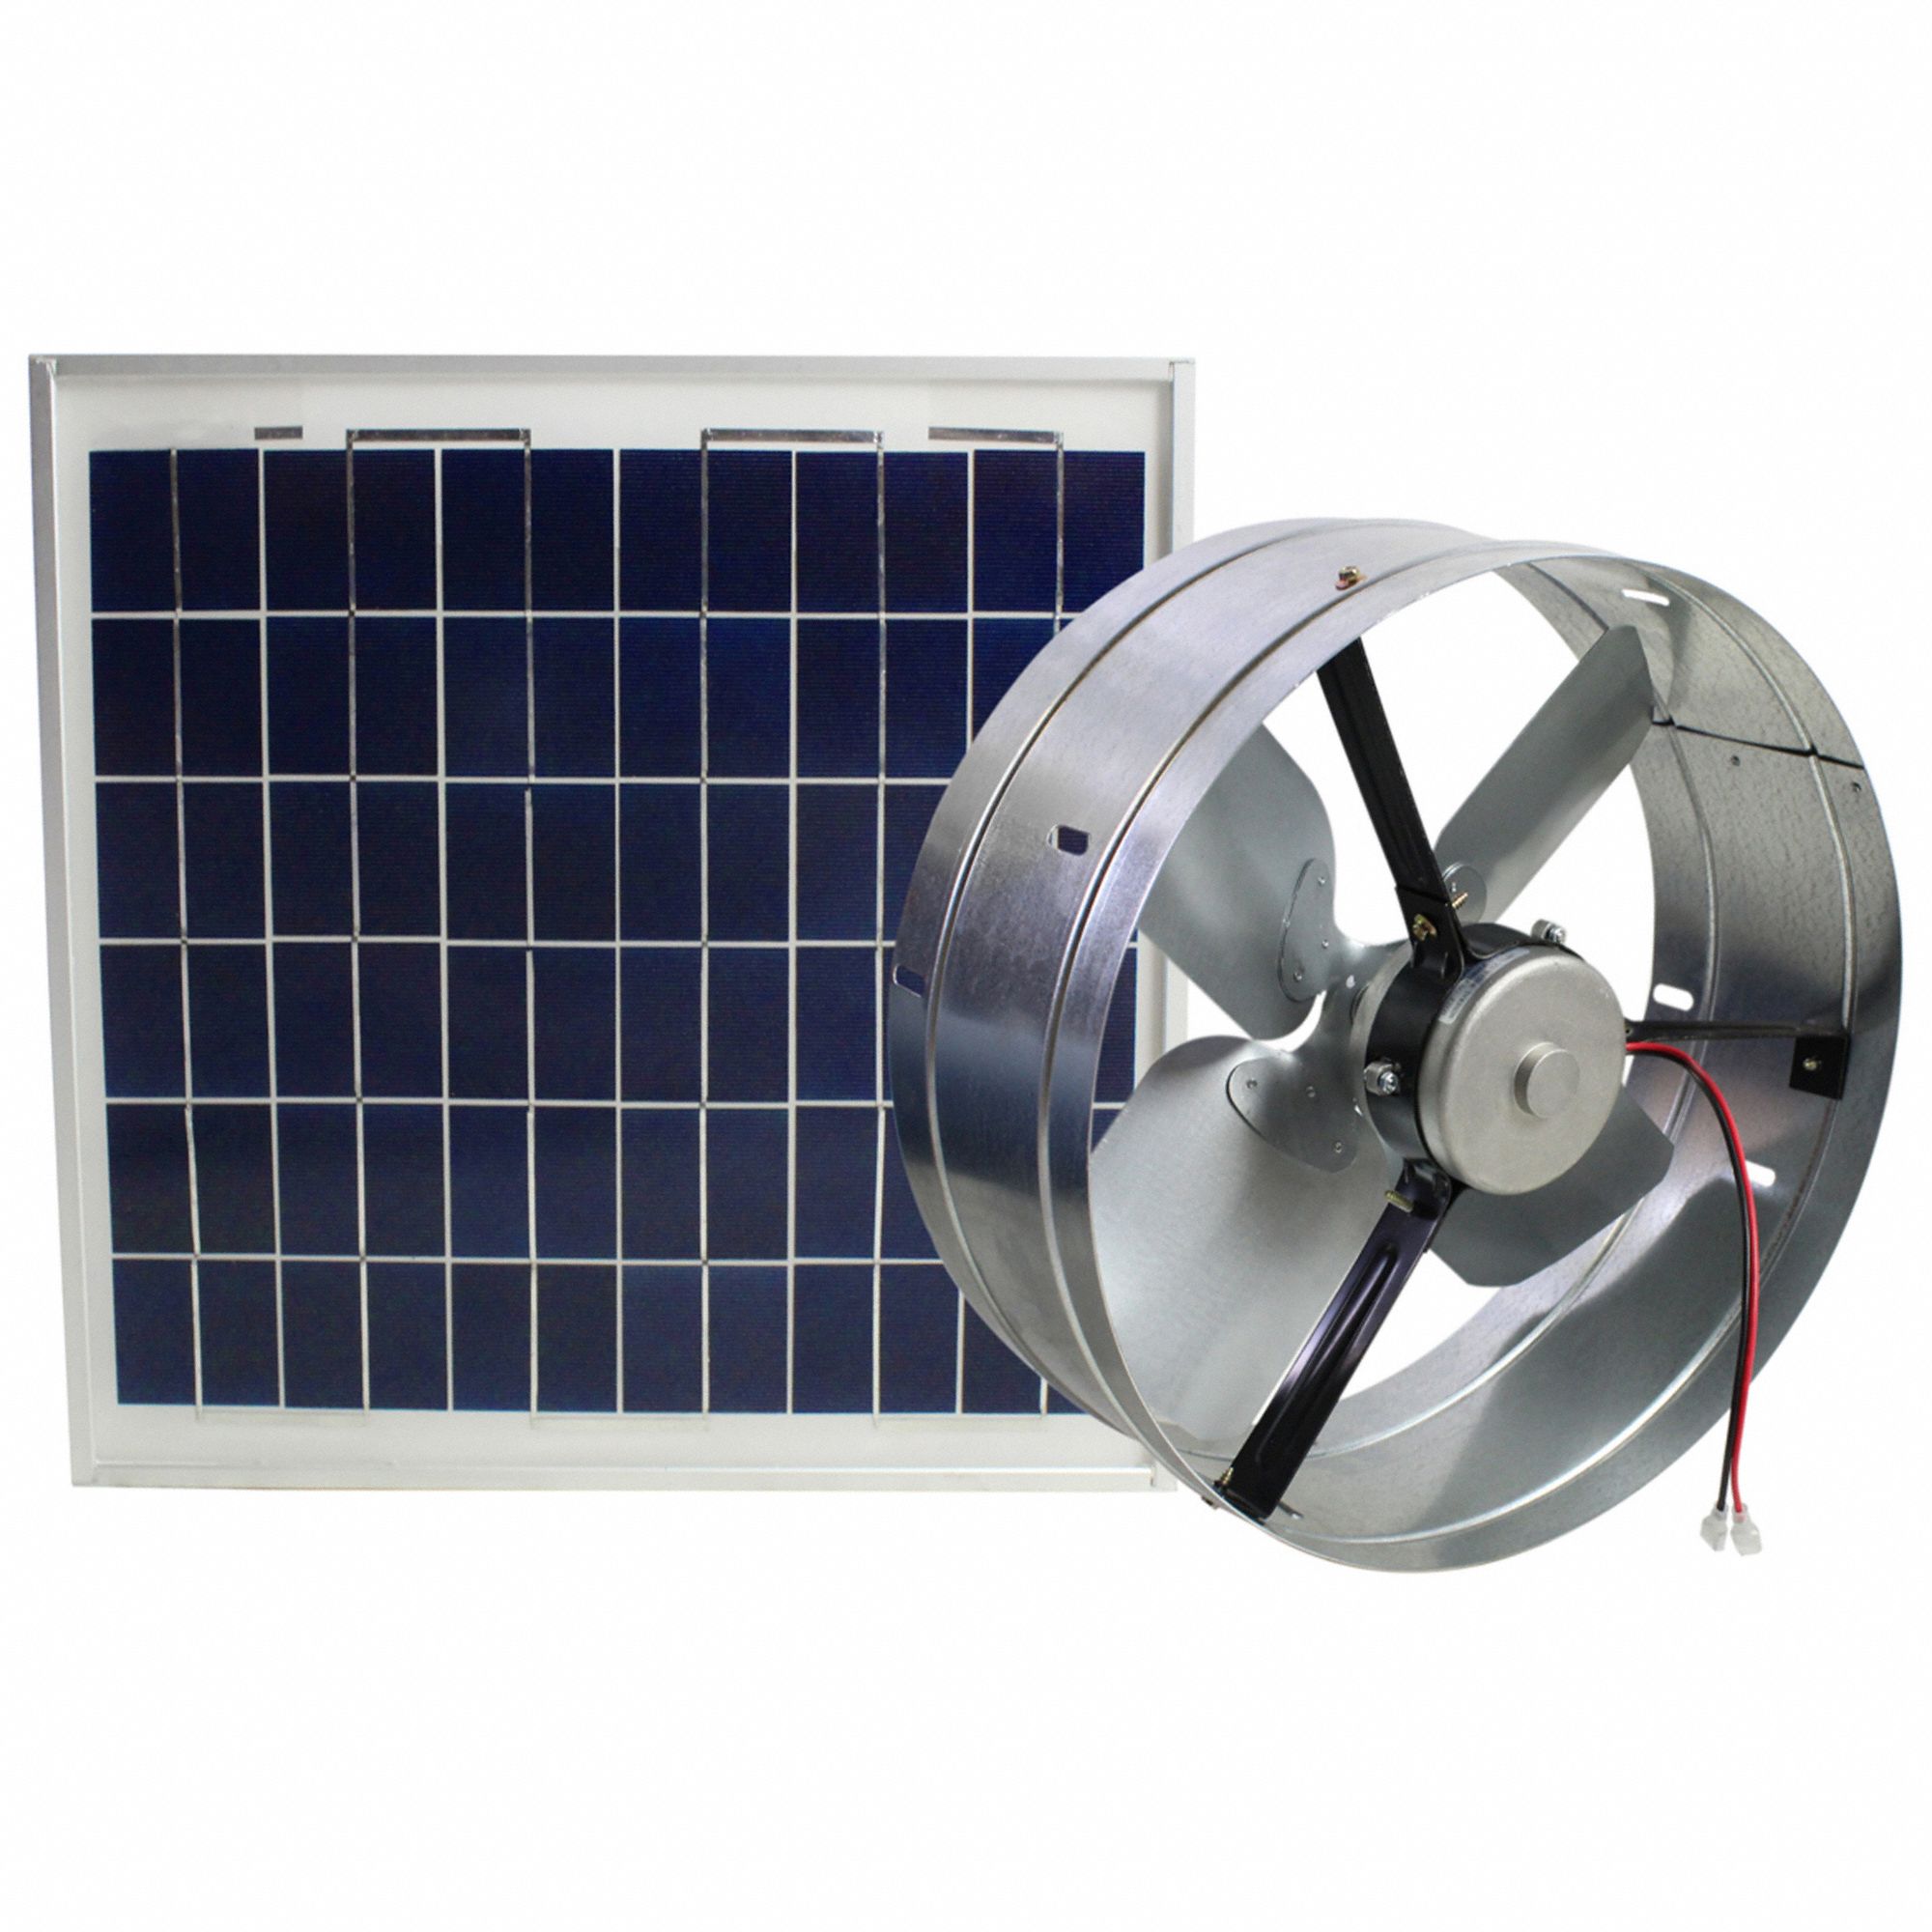 Attic Exhaust Fan: Gable Mount, Solar, Max. 1,550 sq ft Attic, 1,000 cfm Max., Manual